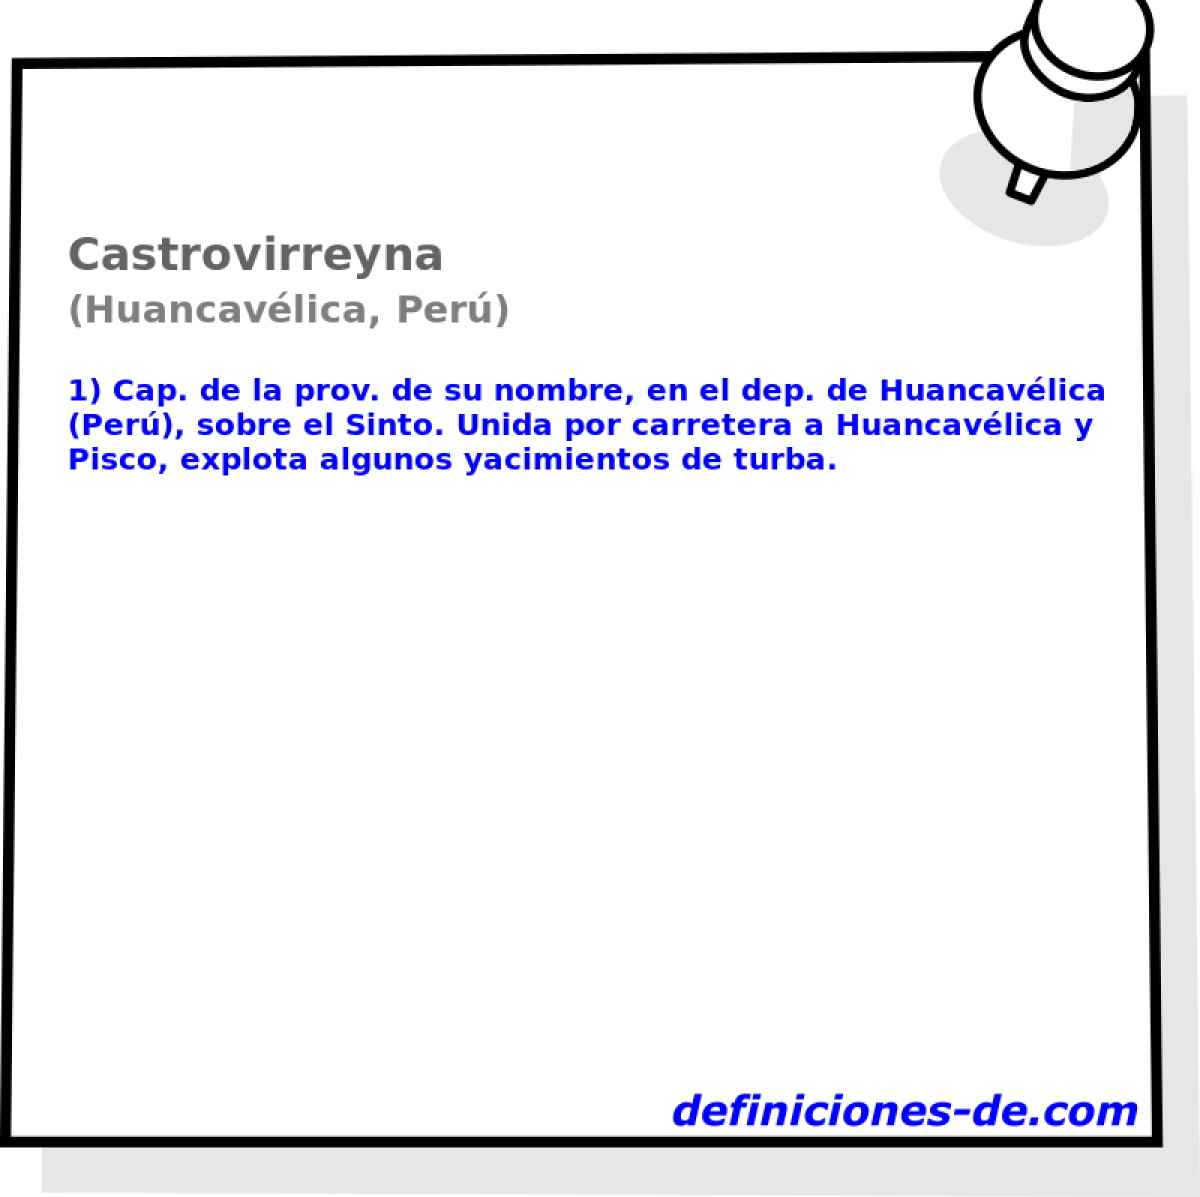 Castrovirreyna (Huancavlica, Per)